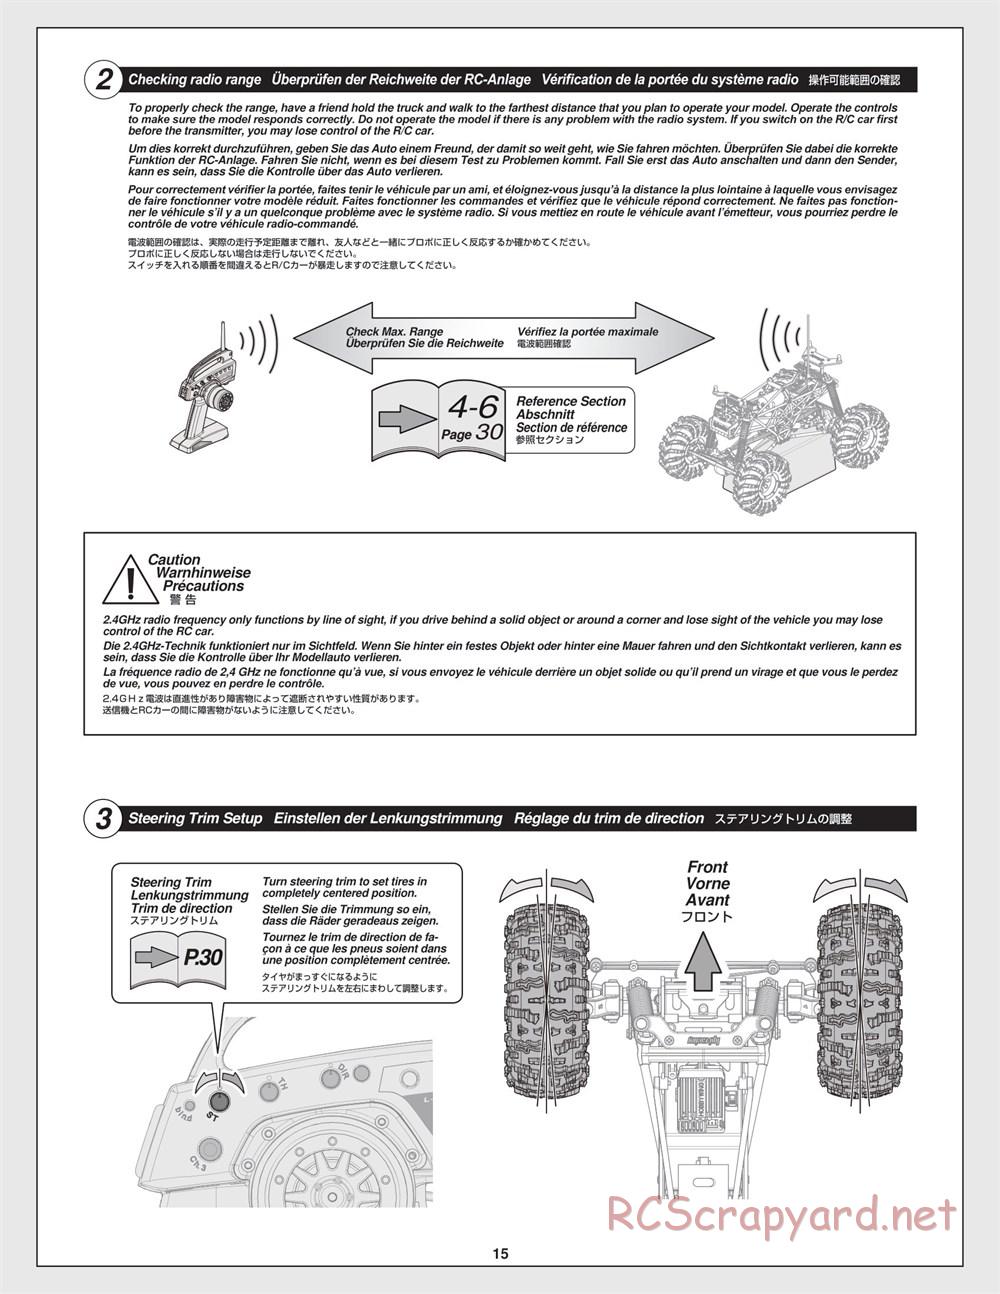 HPI - Crawler King - Manual - Page 15